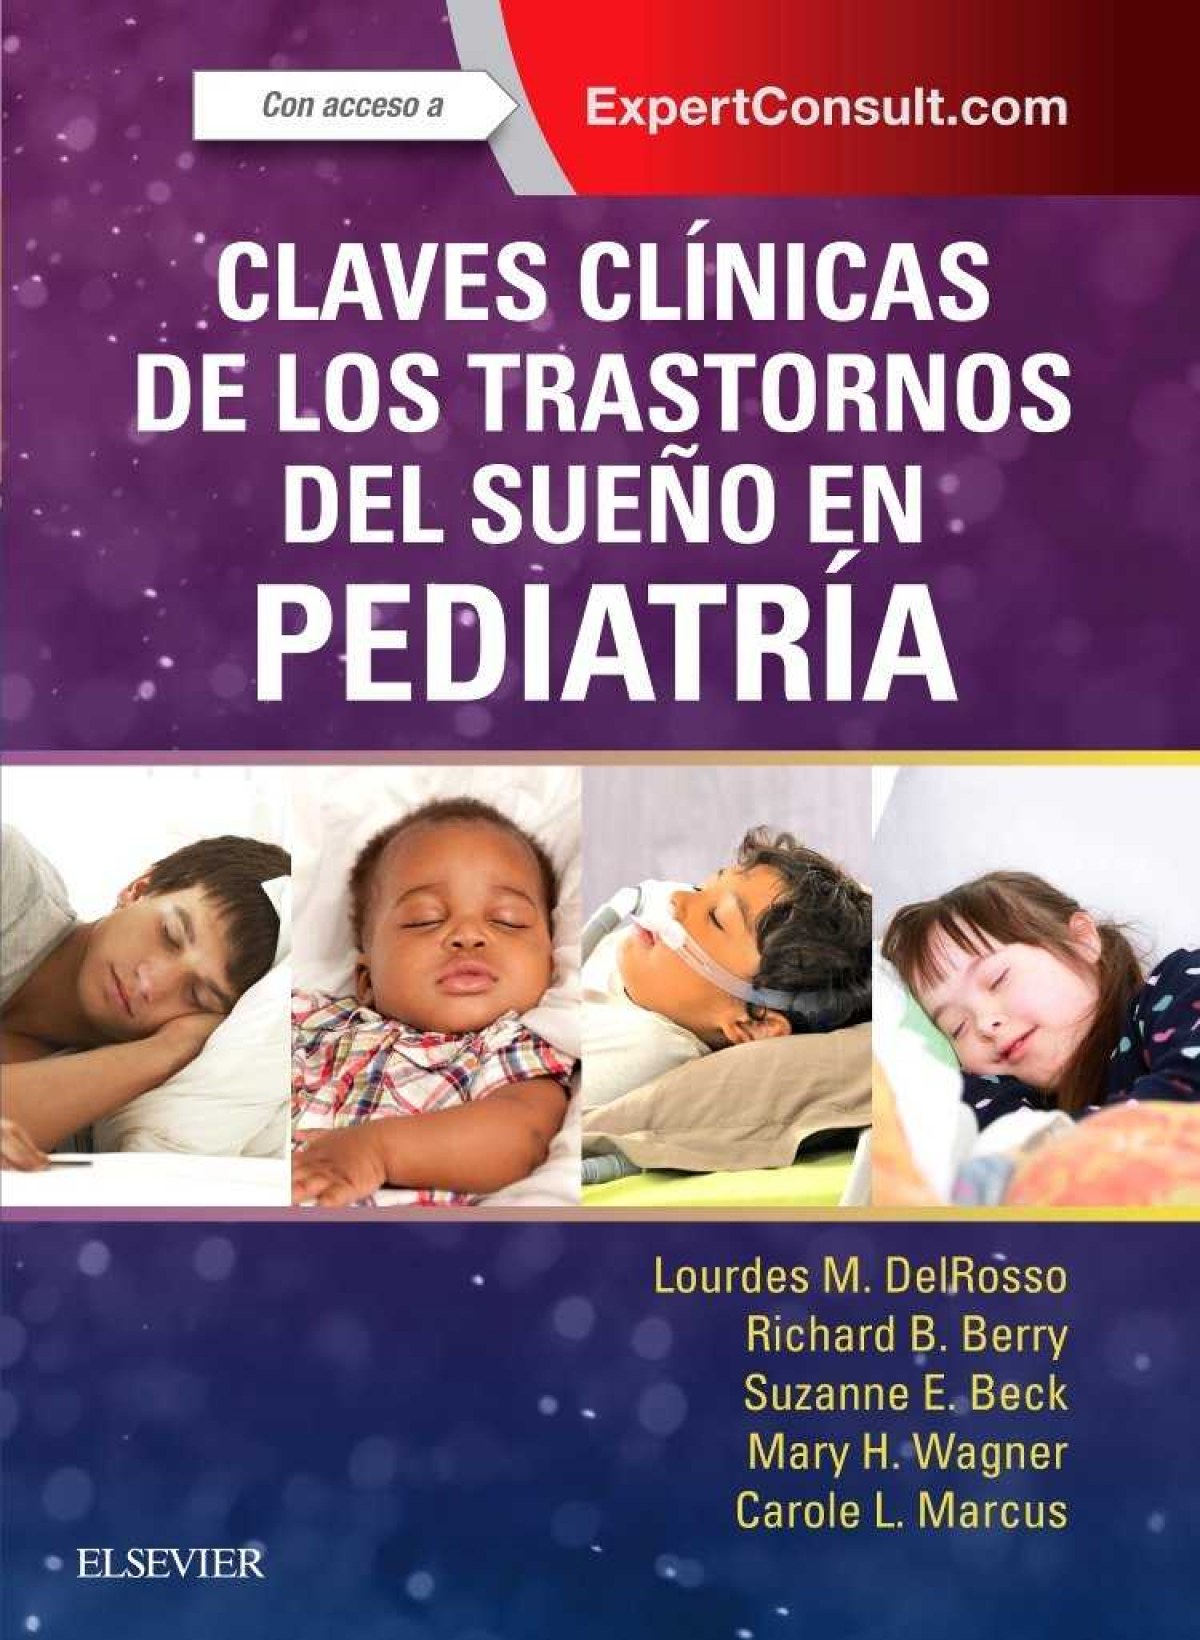 Claves Clínicas de los Trastornos del Sueño en Pediatría